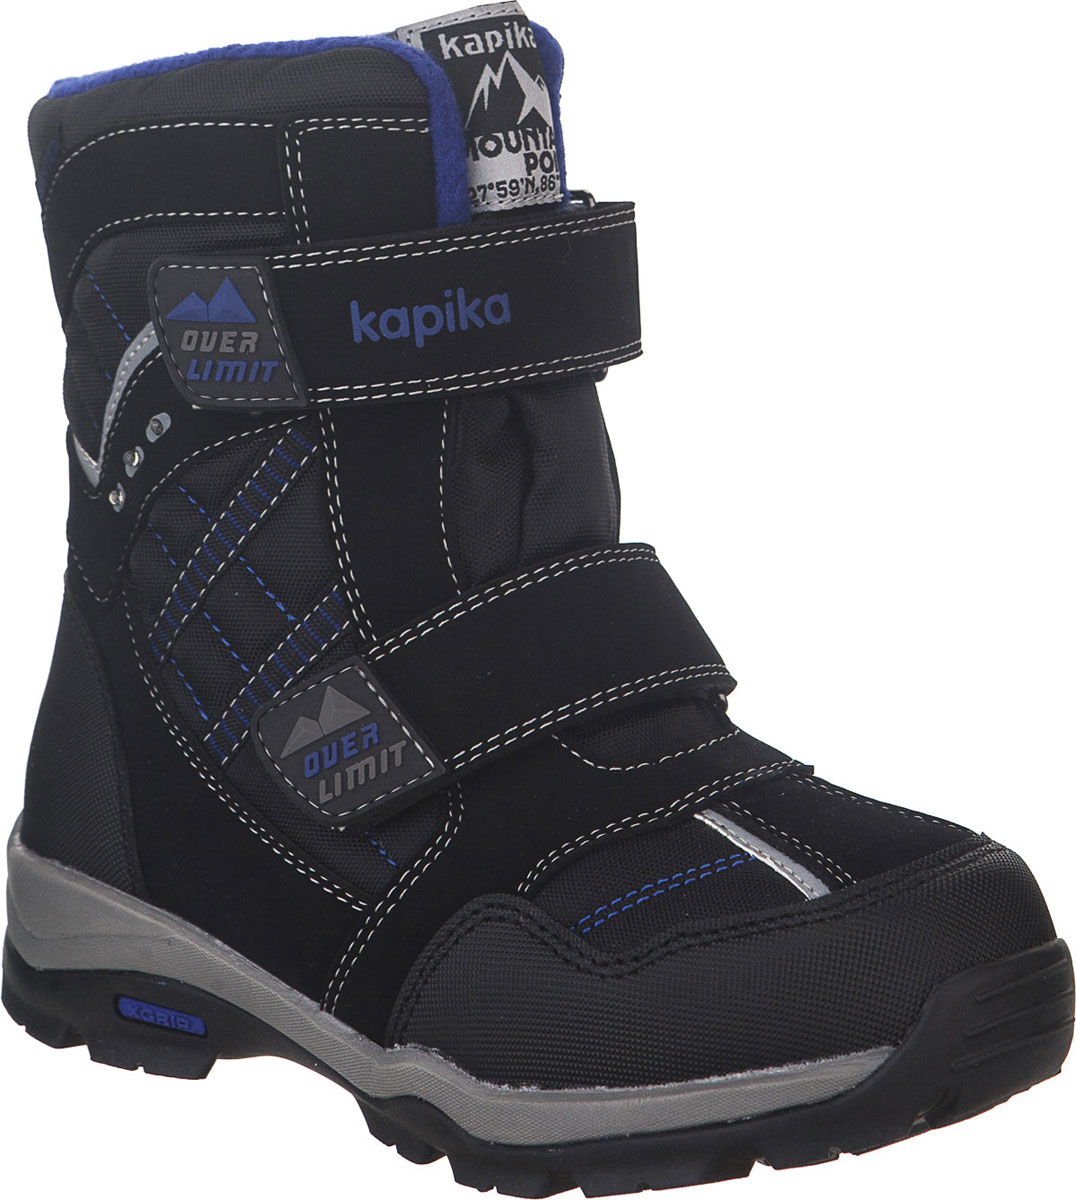 Ботинки для мальчика Kapika, цвет: черный, синий. 43208-1. Размер 31